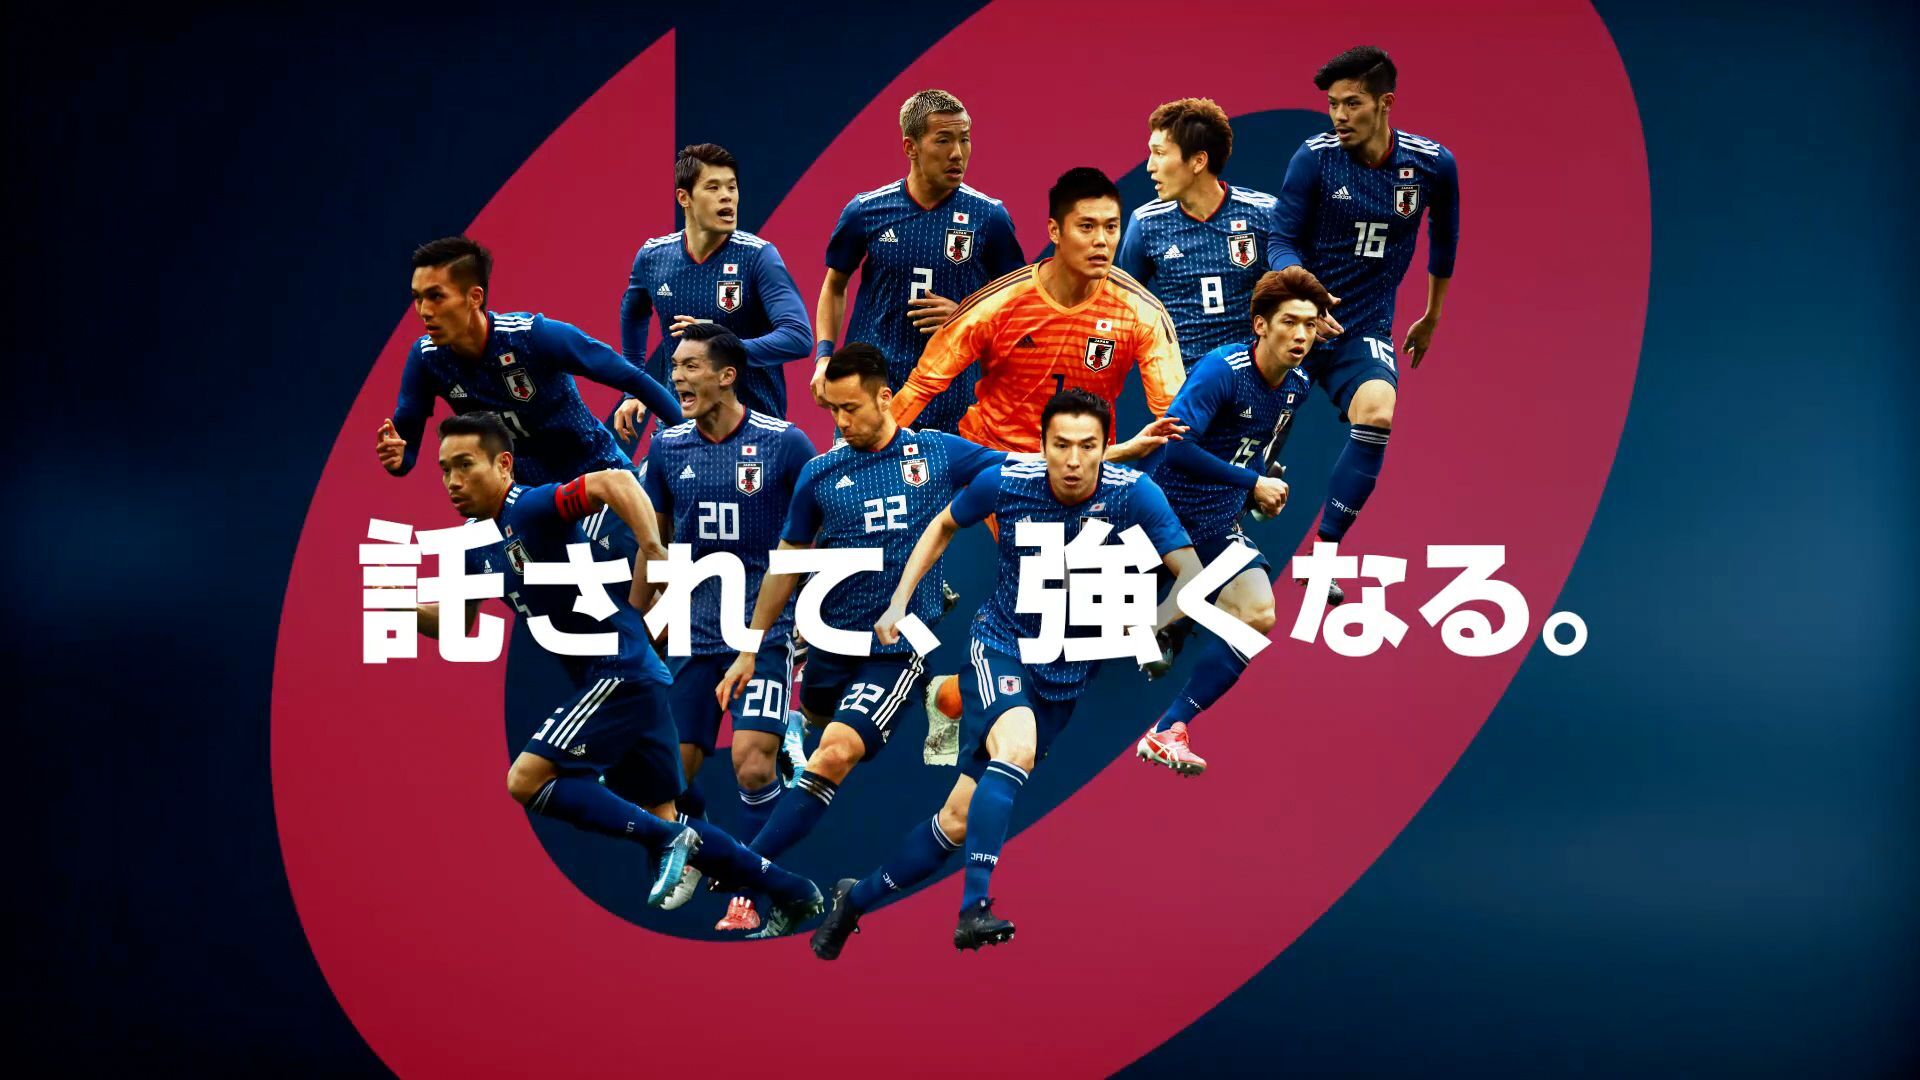 上 サッカー 日本 代表 Cm 素晴らしいサッカーの写真